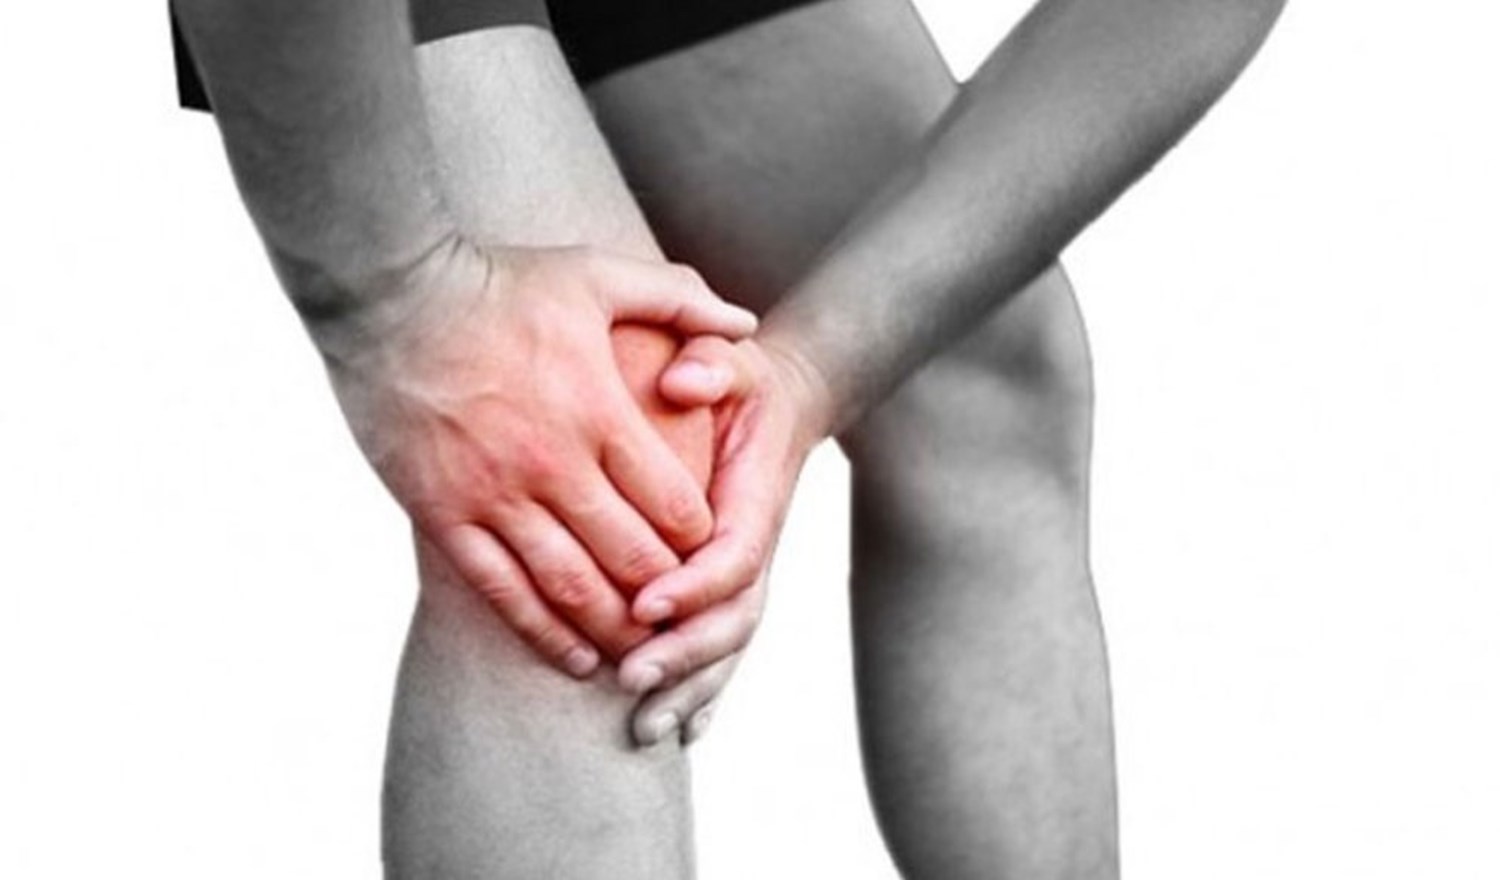 اقضي على التهاب المفاصل وآلام العضلات “بطرق منزلية سهلة”